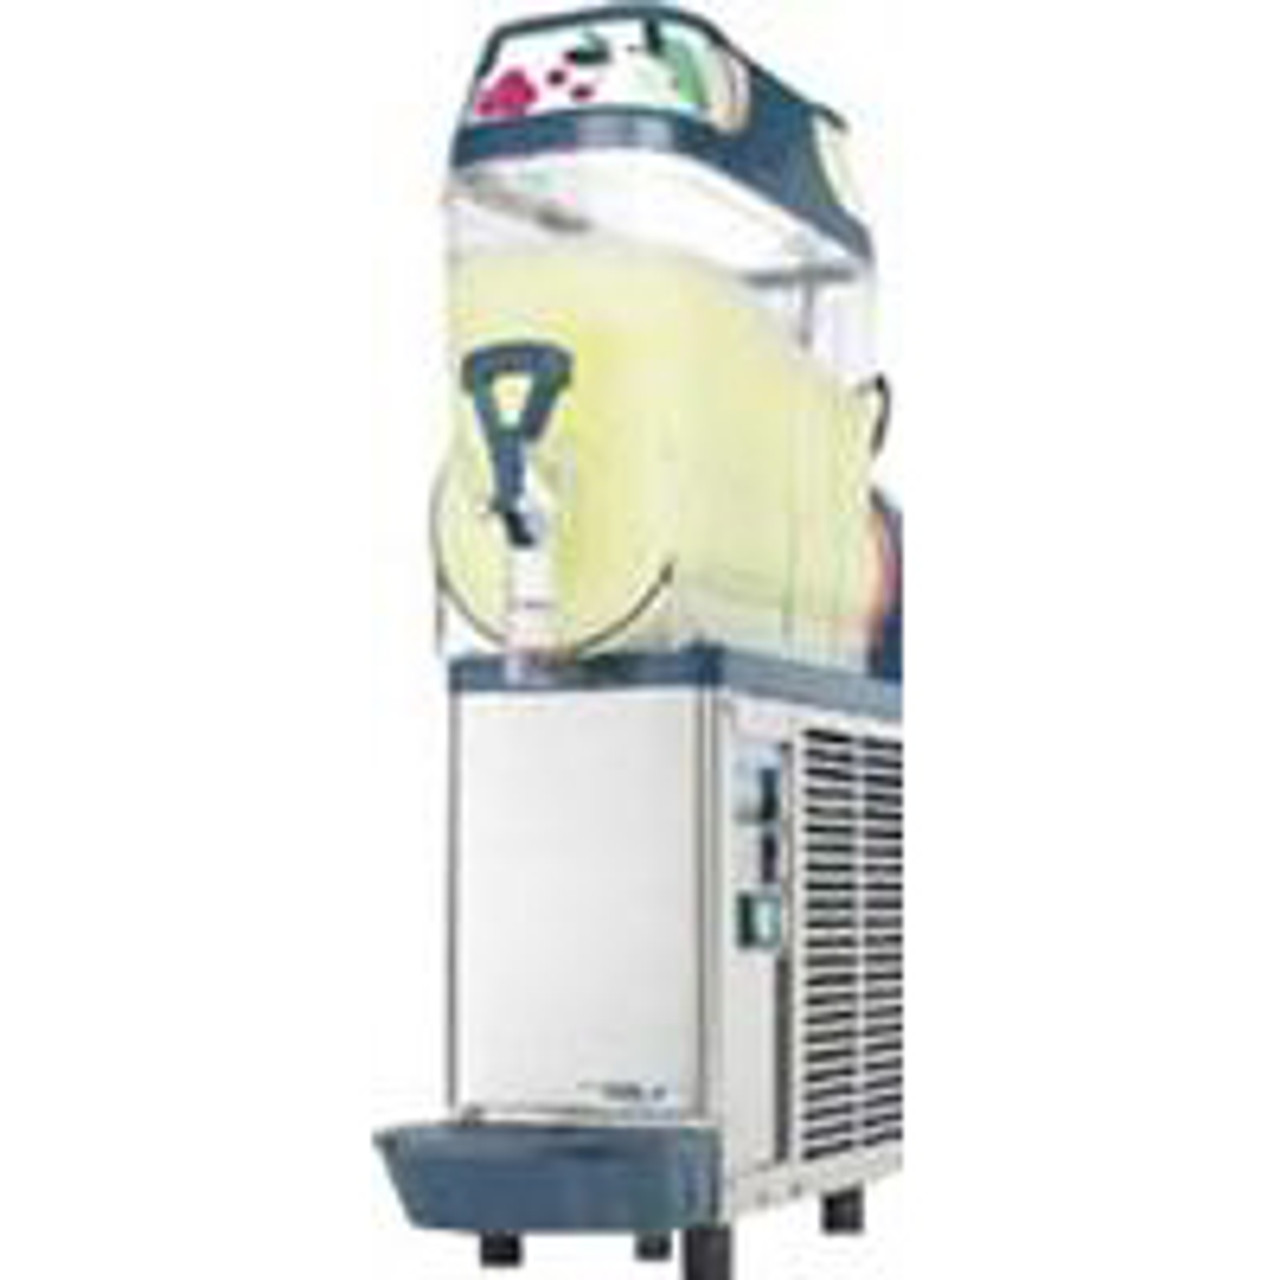 10L Frozen Cocktail Ice Slush Machine Granita Slushy Machine